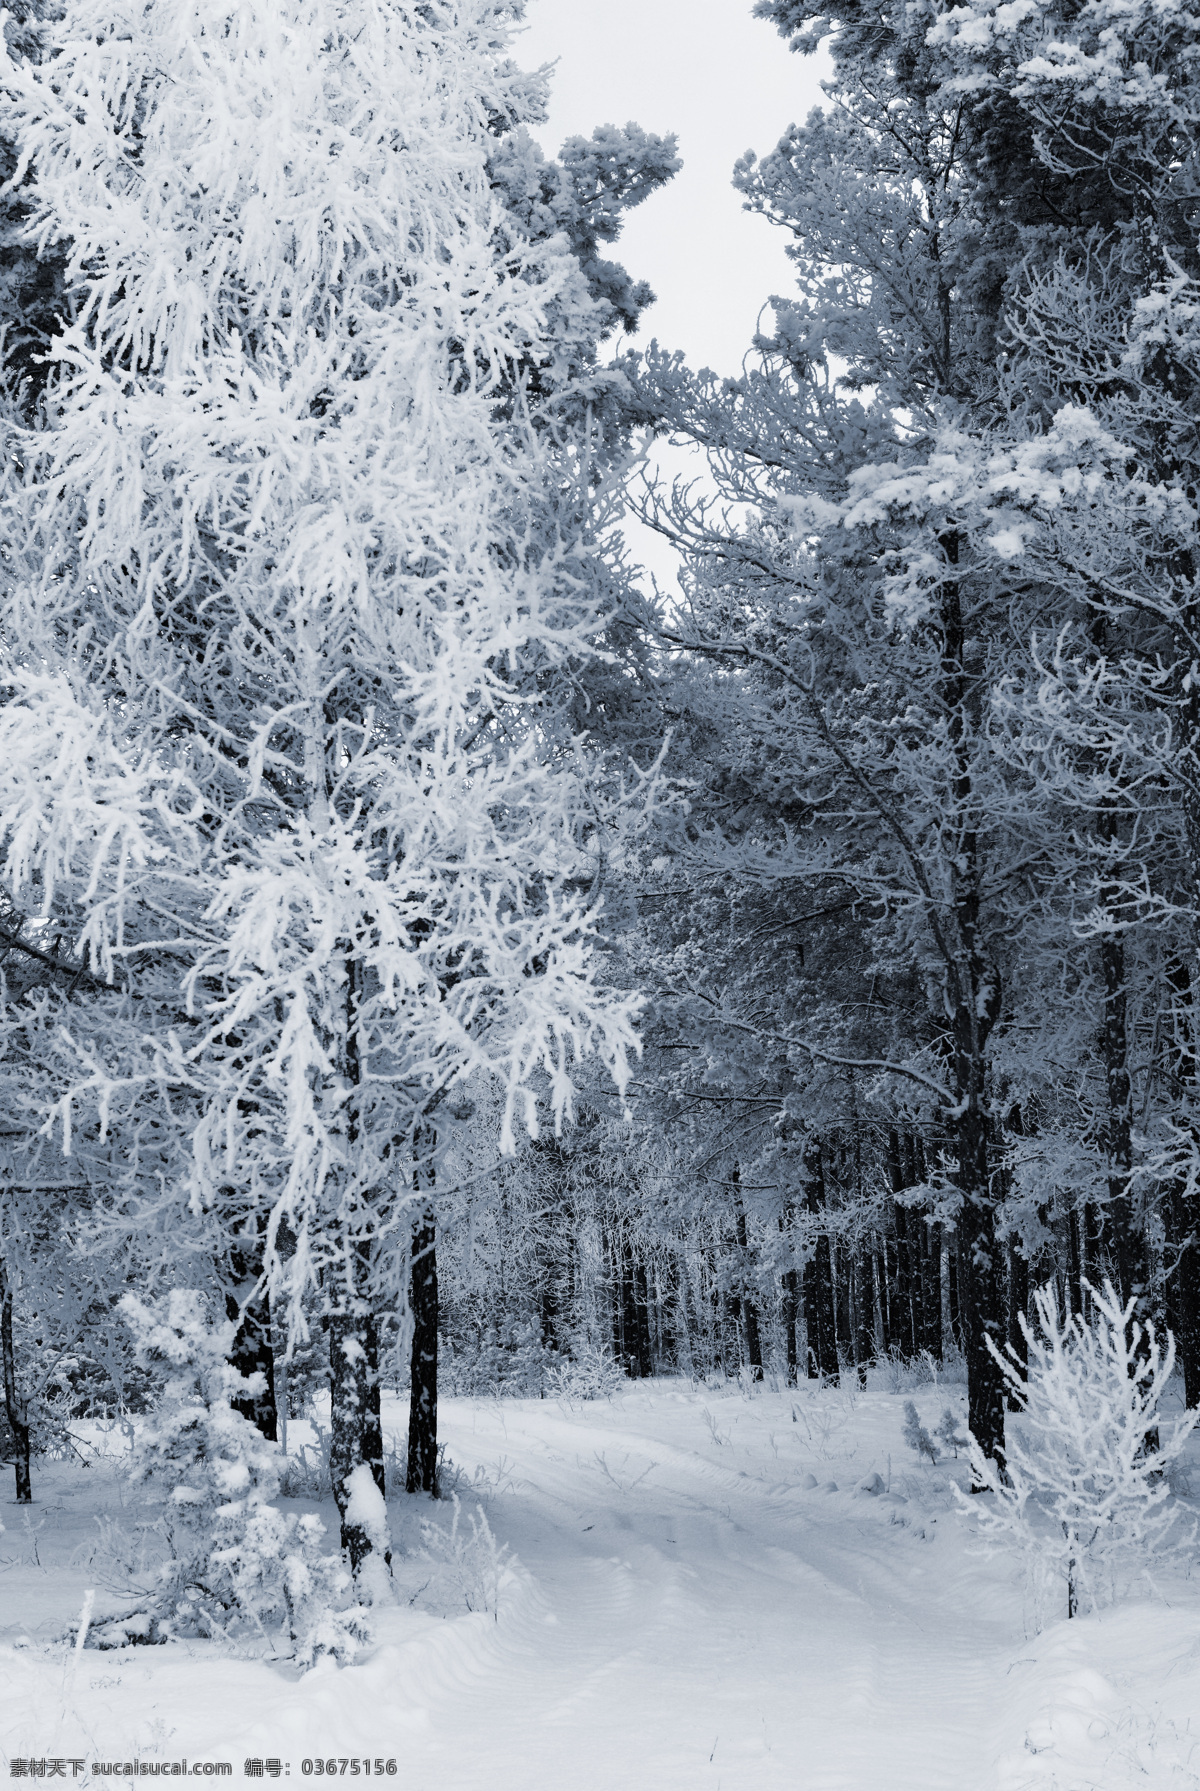 积雪美景 冬季 冬天 雪景 美丽风景 景色 美景 积雪 雪花 雪地 森林 树木 自然风景 自然景观 白色